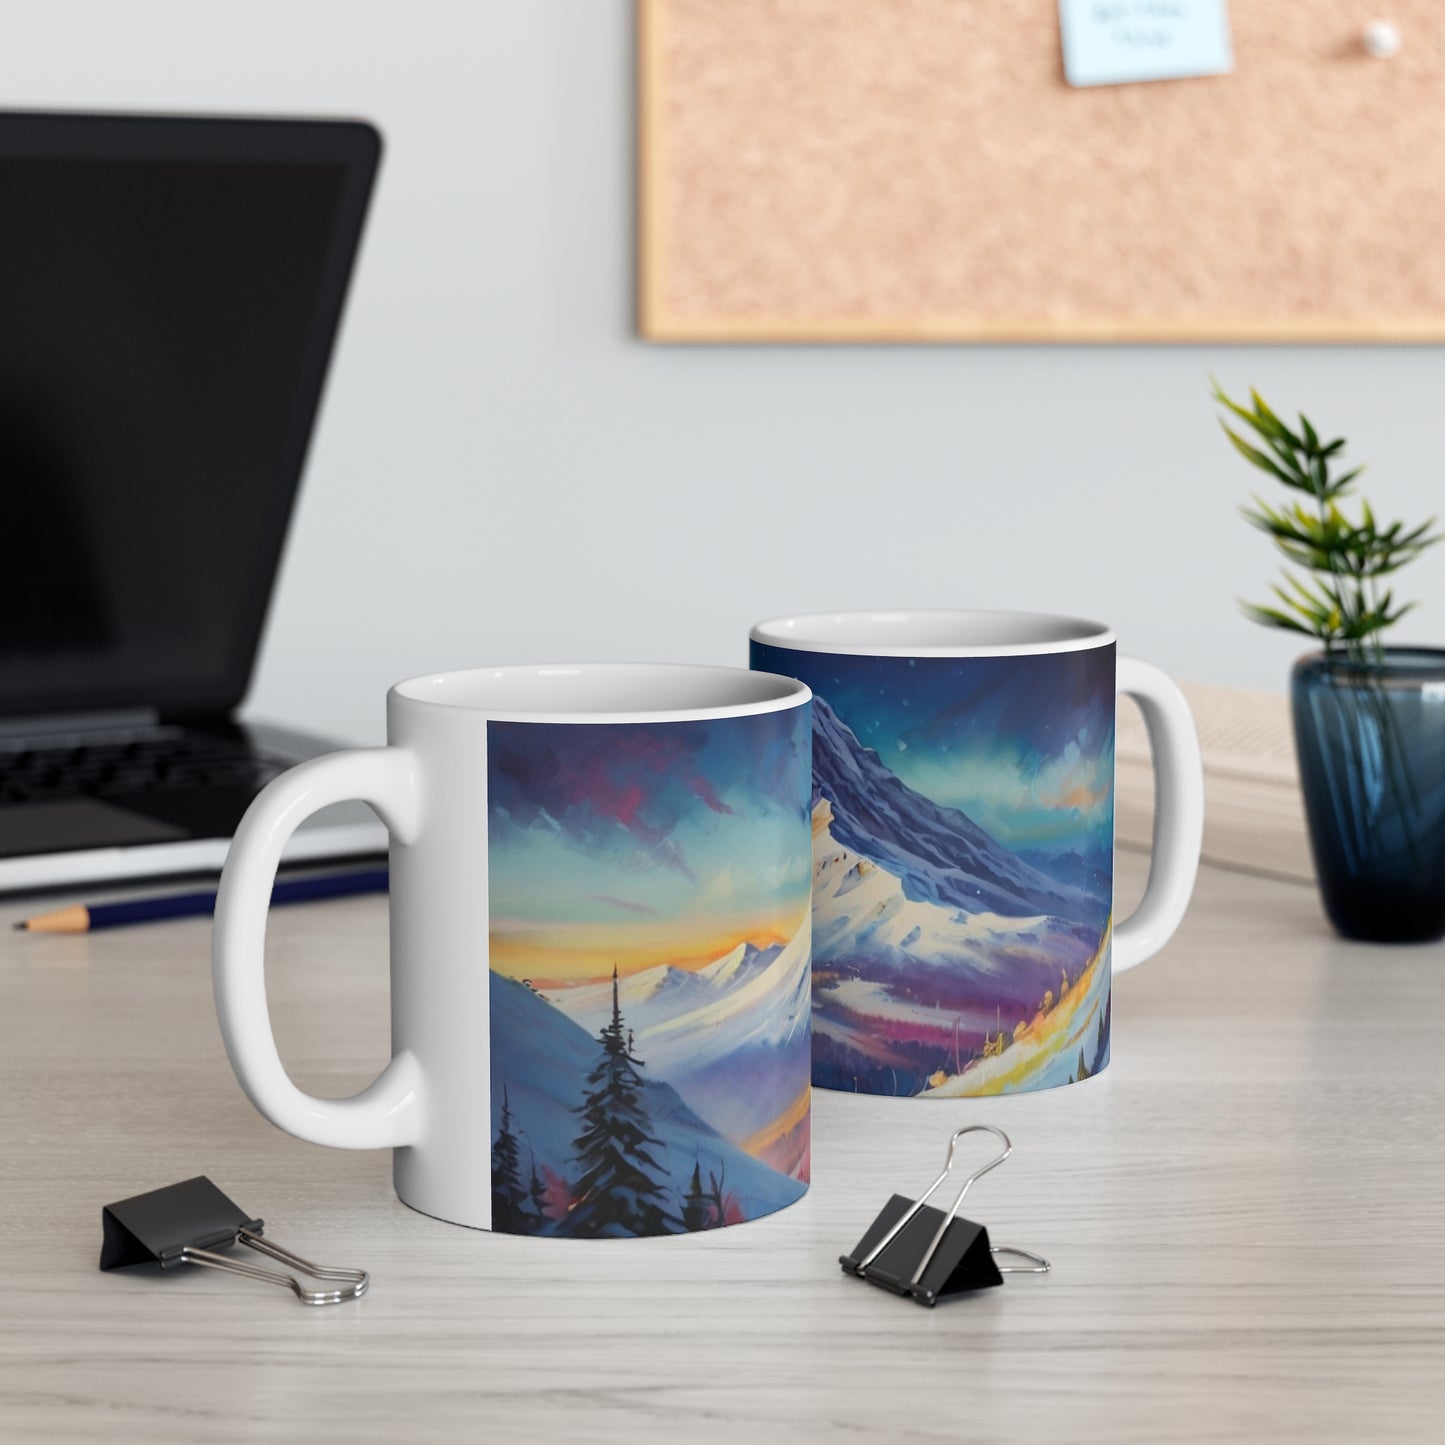 Snowy Mountain Mug - Ceramic Coffee Mug 11oz